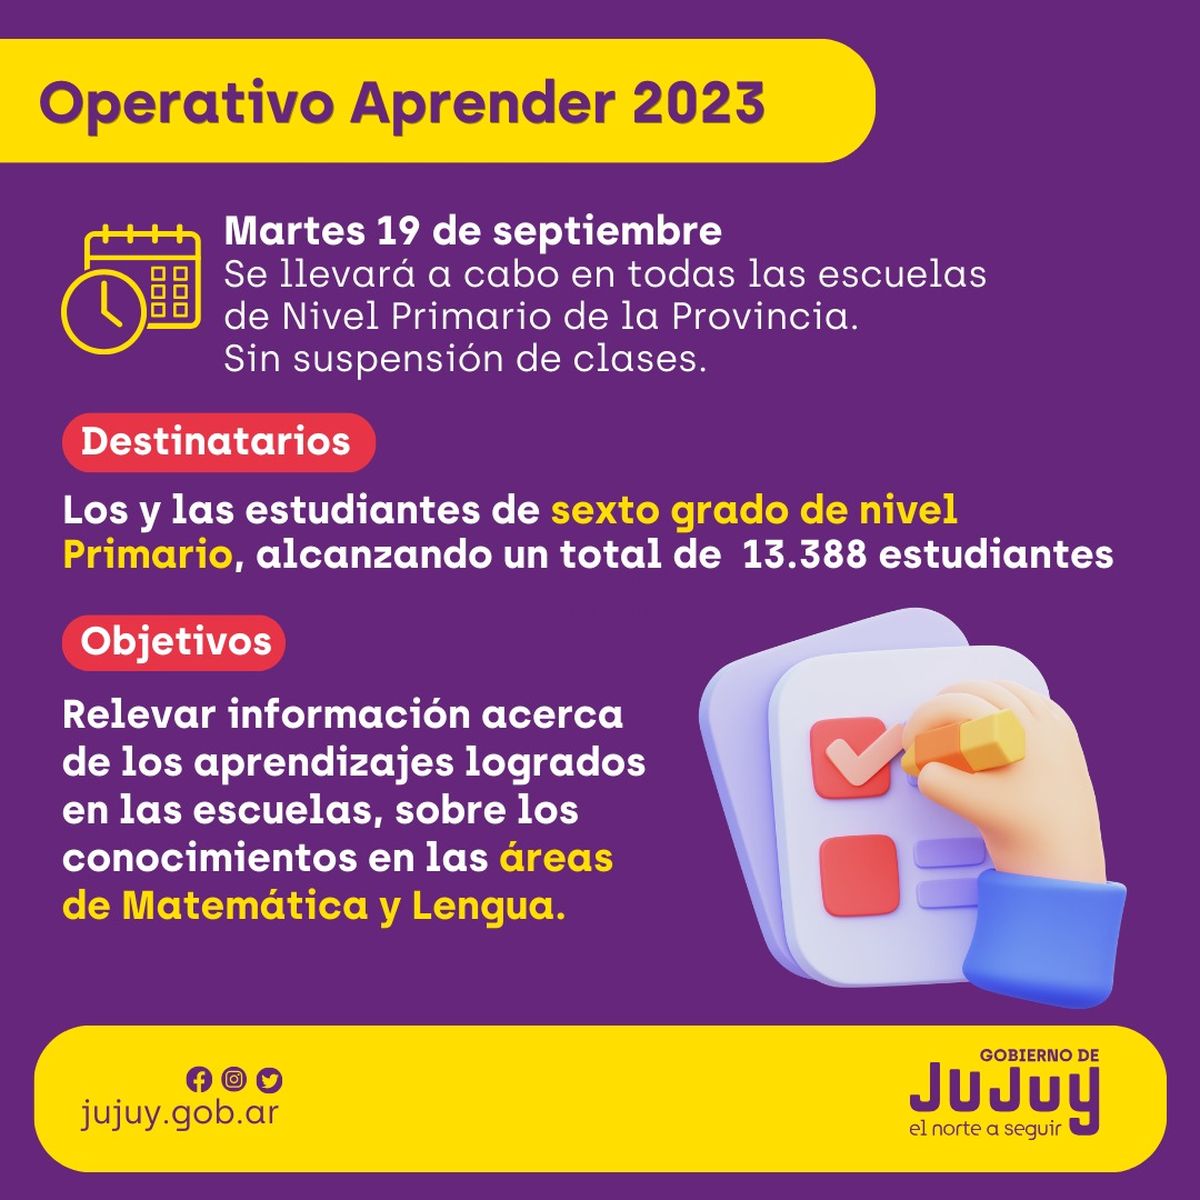 El martes 19 de septiembre se realizará el Operativo Aprender 2023